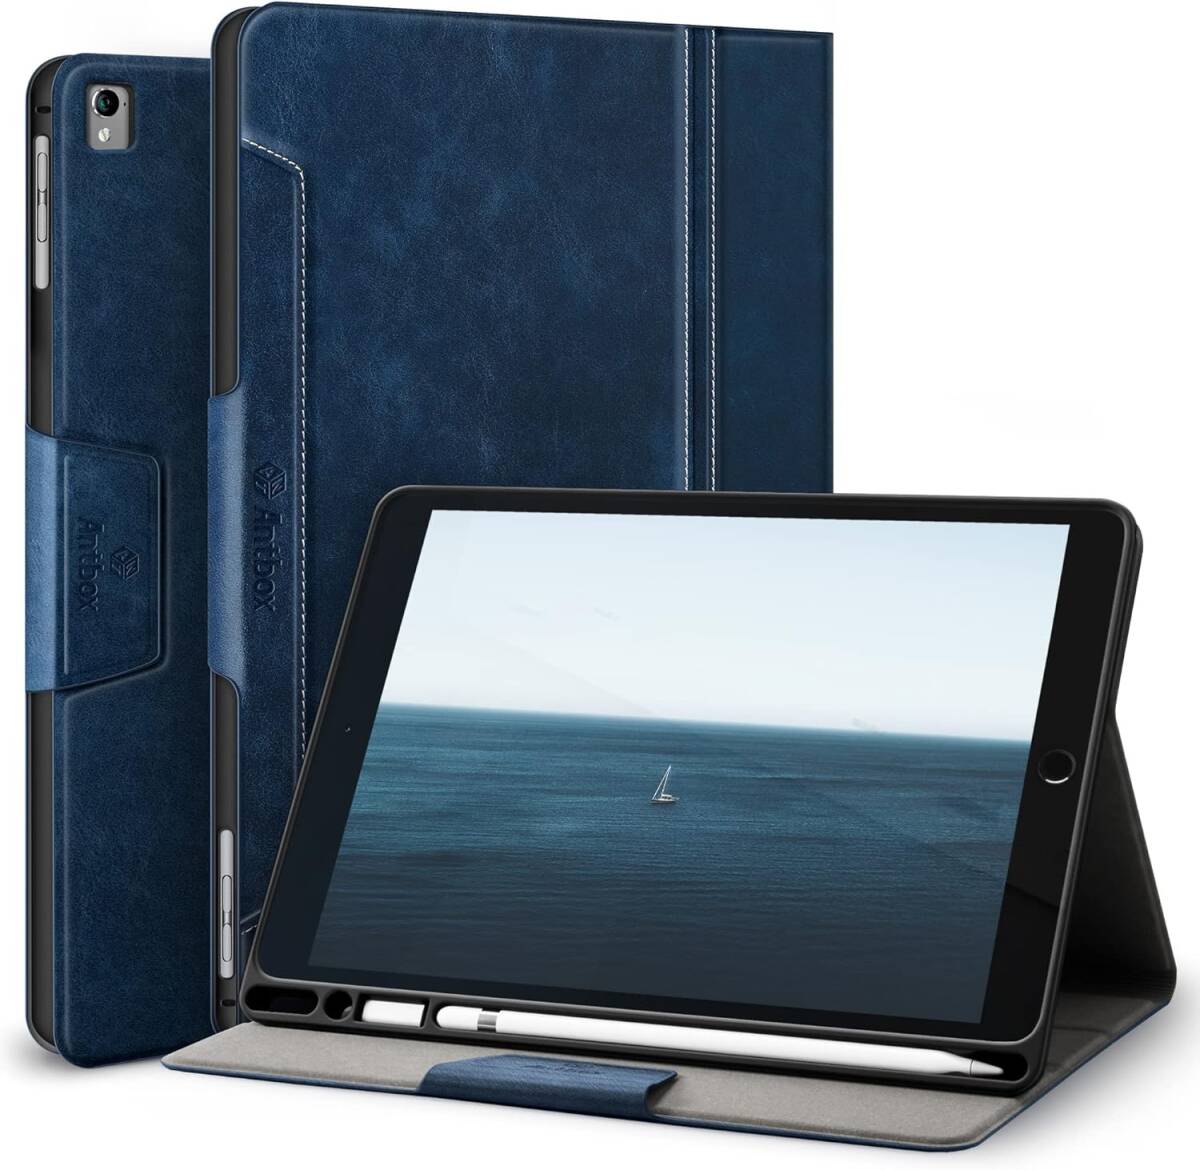 Antbox iPad 9.7 ケース(iPad 第6/5世代 ケース) iPad Air2 ケース/iPad Air ケース/iPad Pro 9.7 ケース 高級ソフトPUレザー製 (ブルー)_画像1